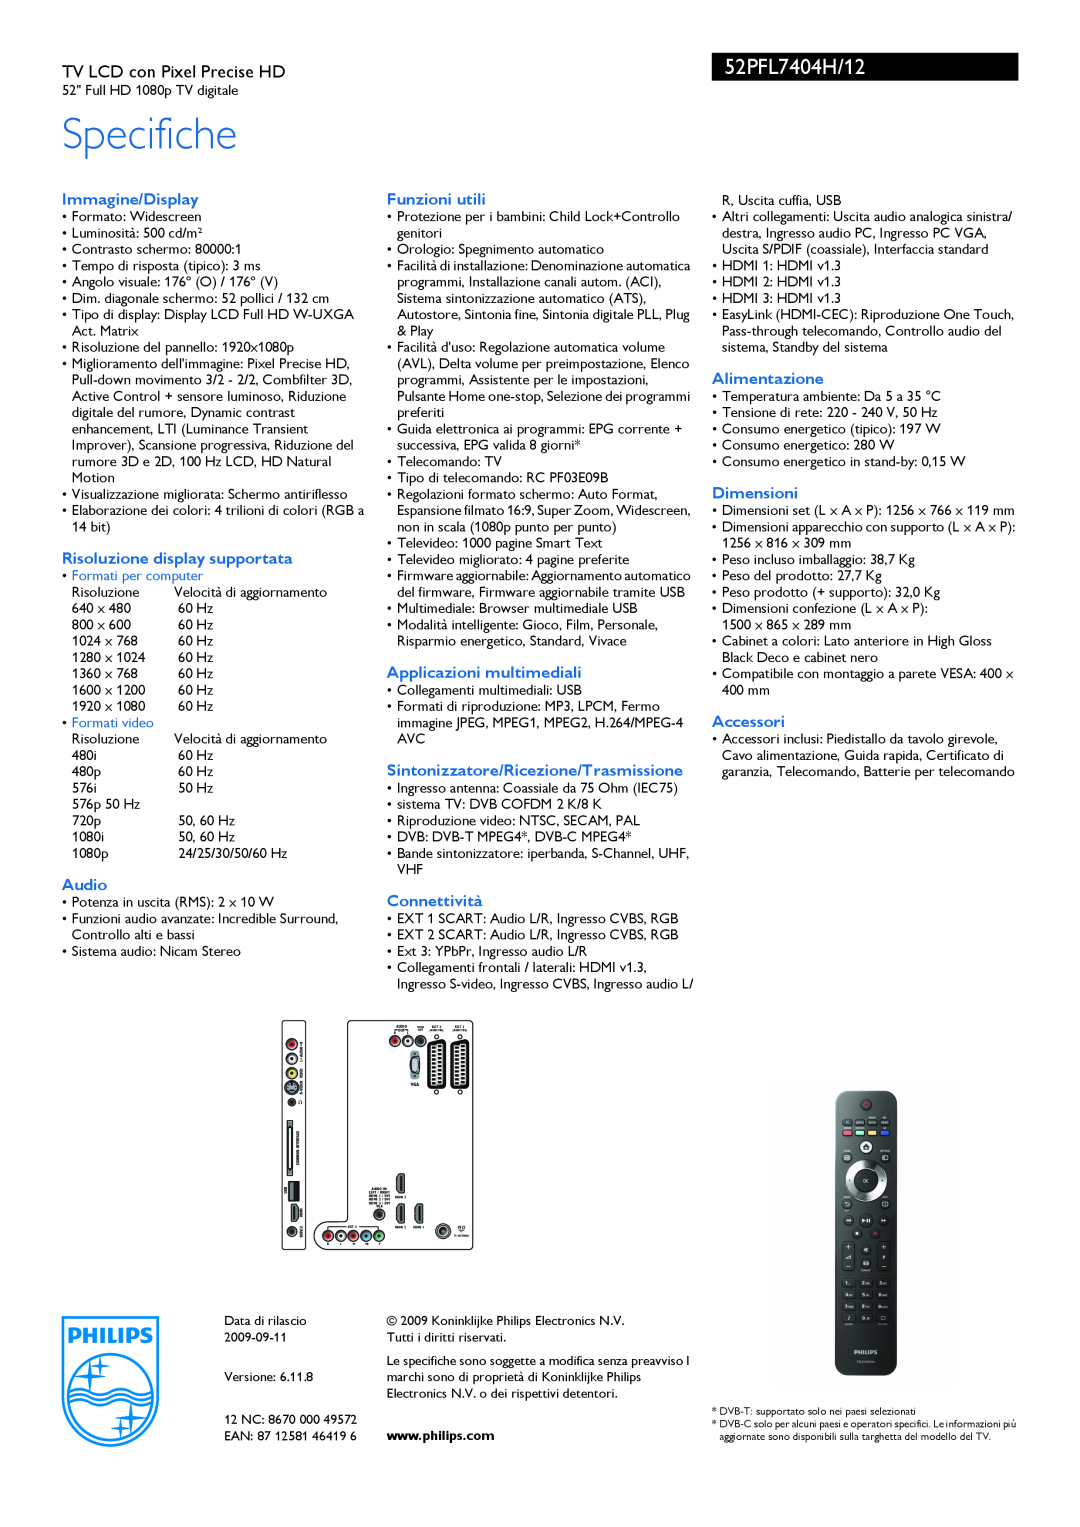 Philips 52PFL7404H manual Specifiche, Immagine/Display, Risoluzione display supportata, Audio, Funzioni utili, Connettività 